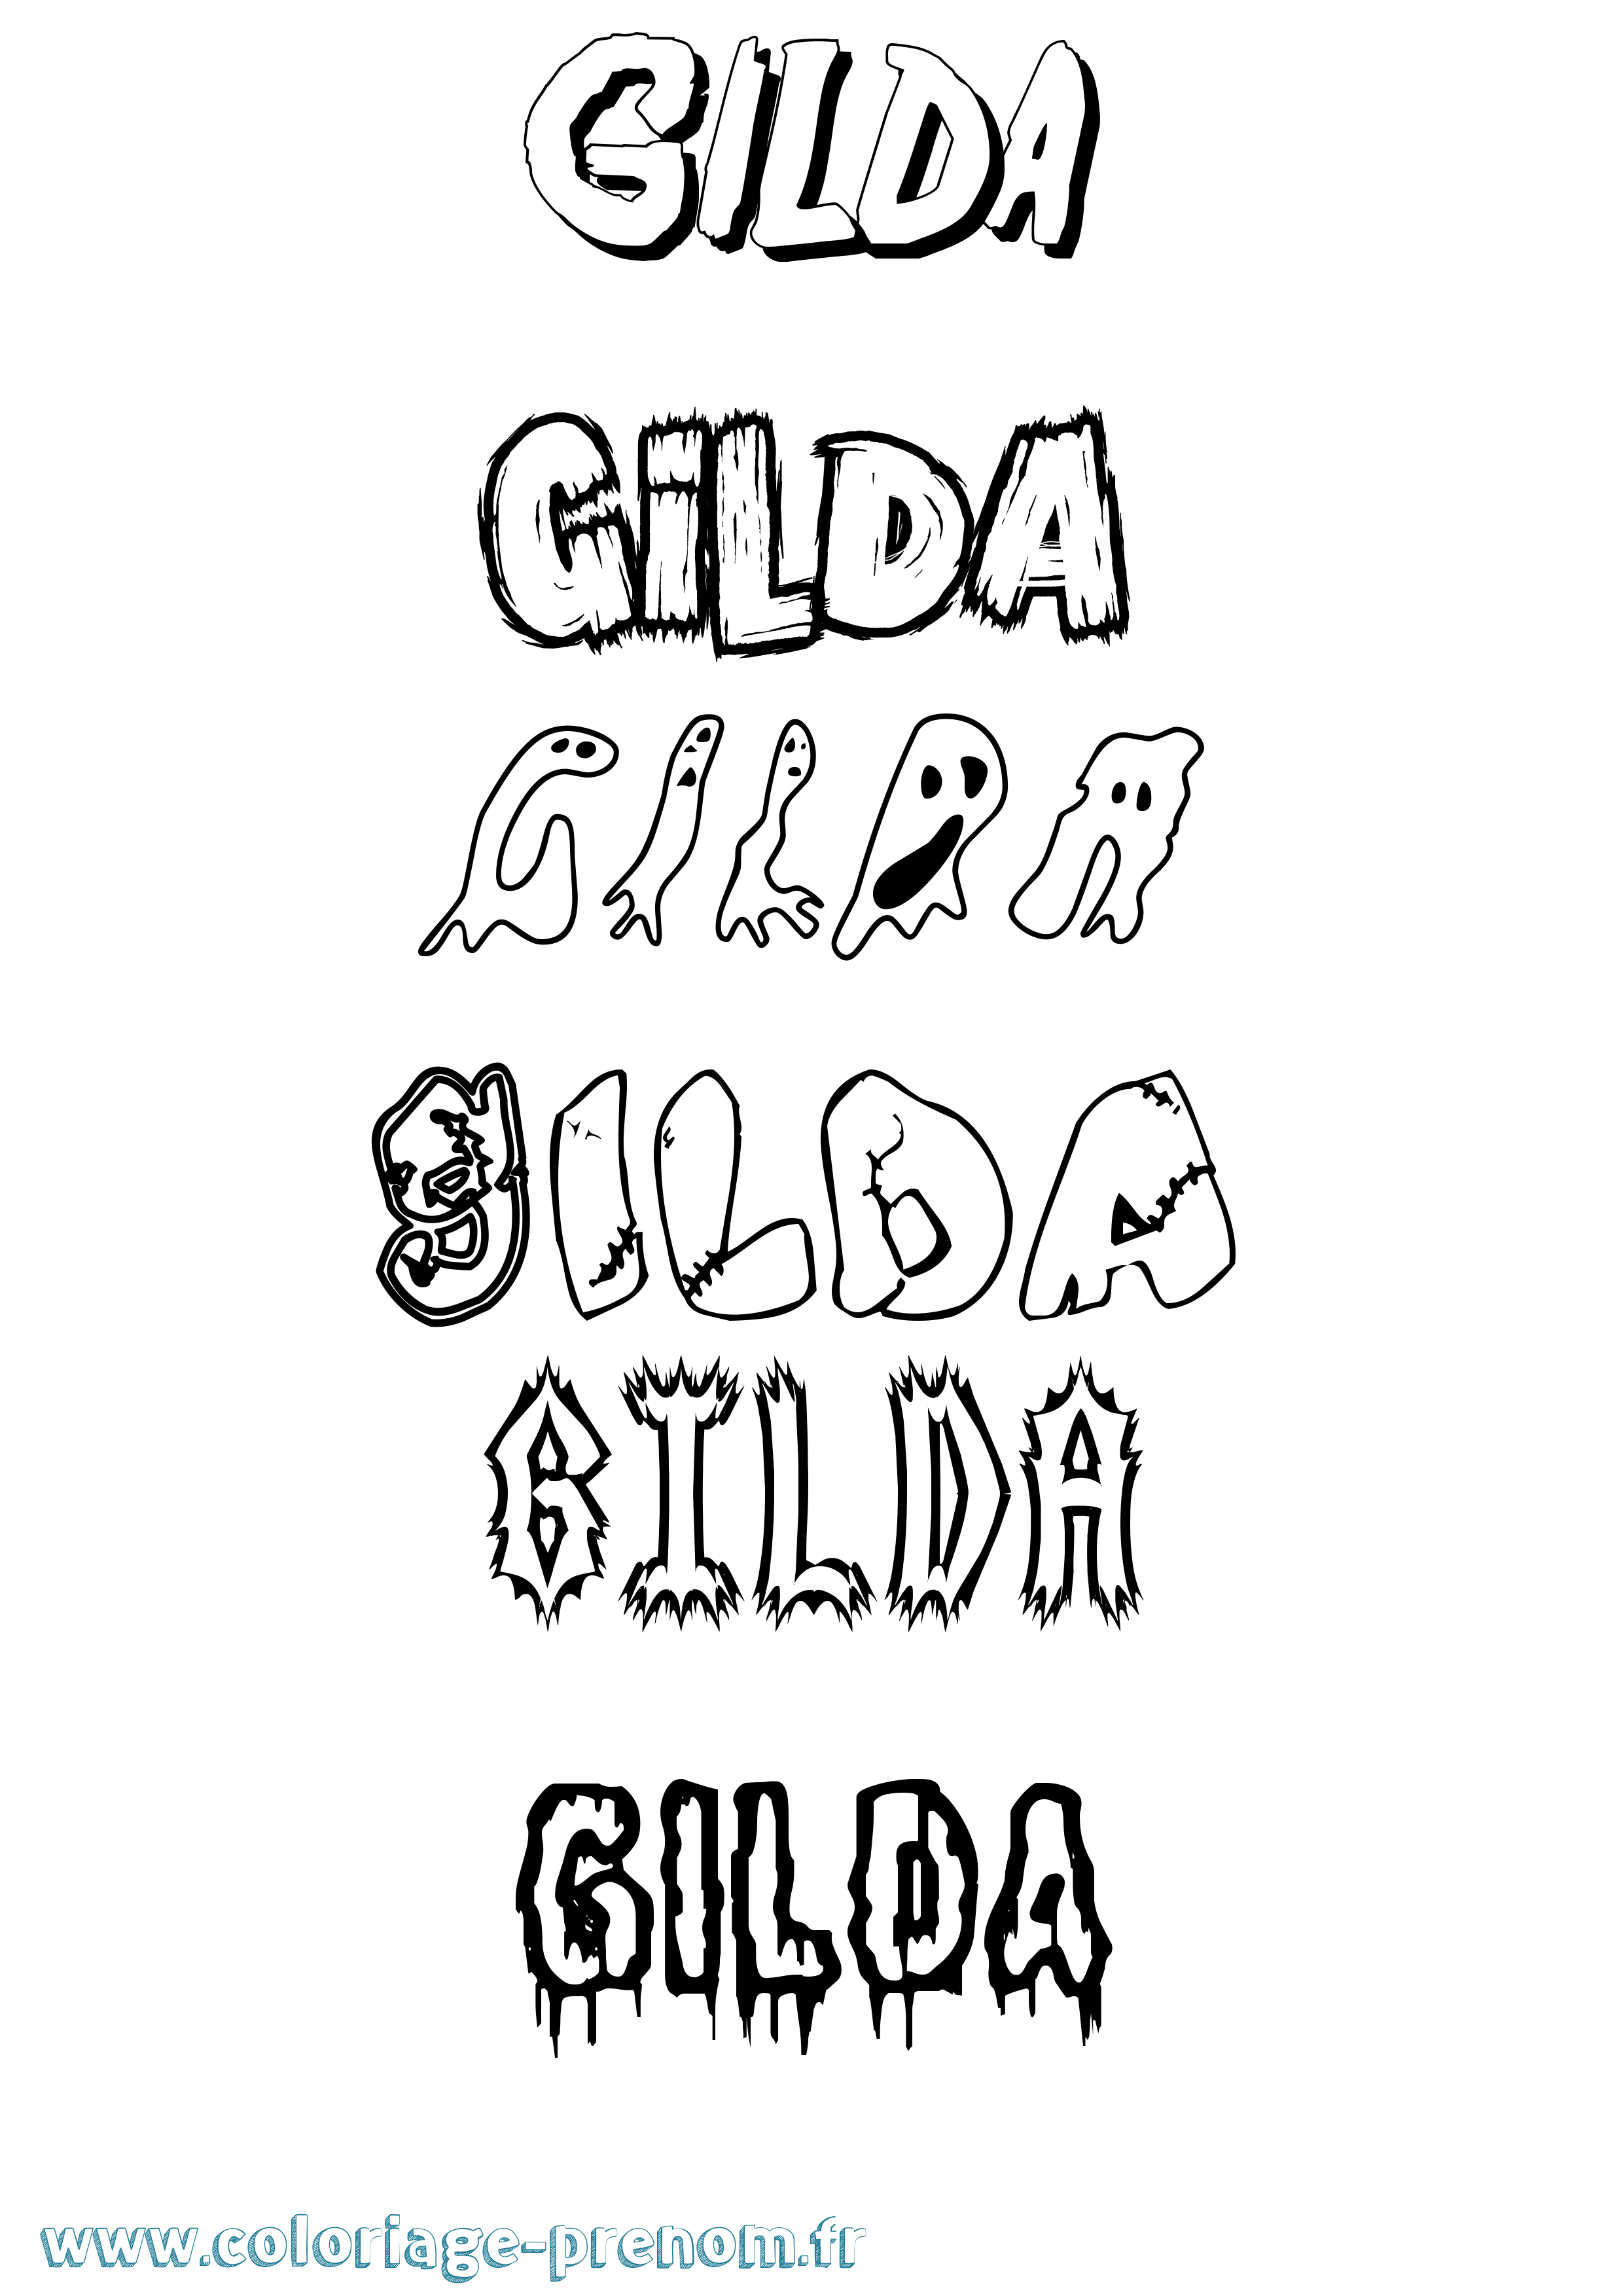 Coloriage prénom Gilda Frisson